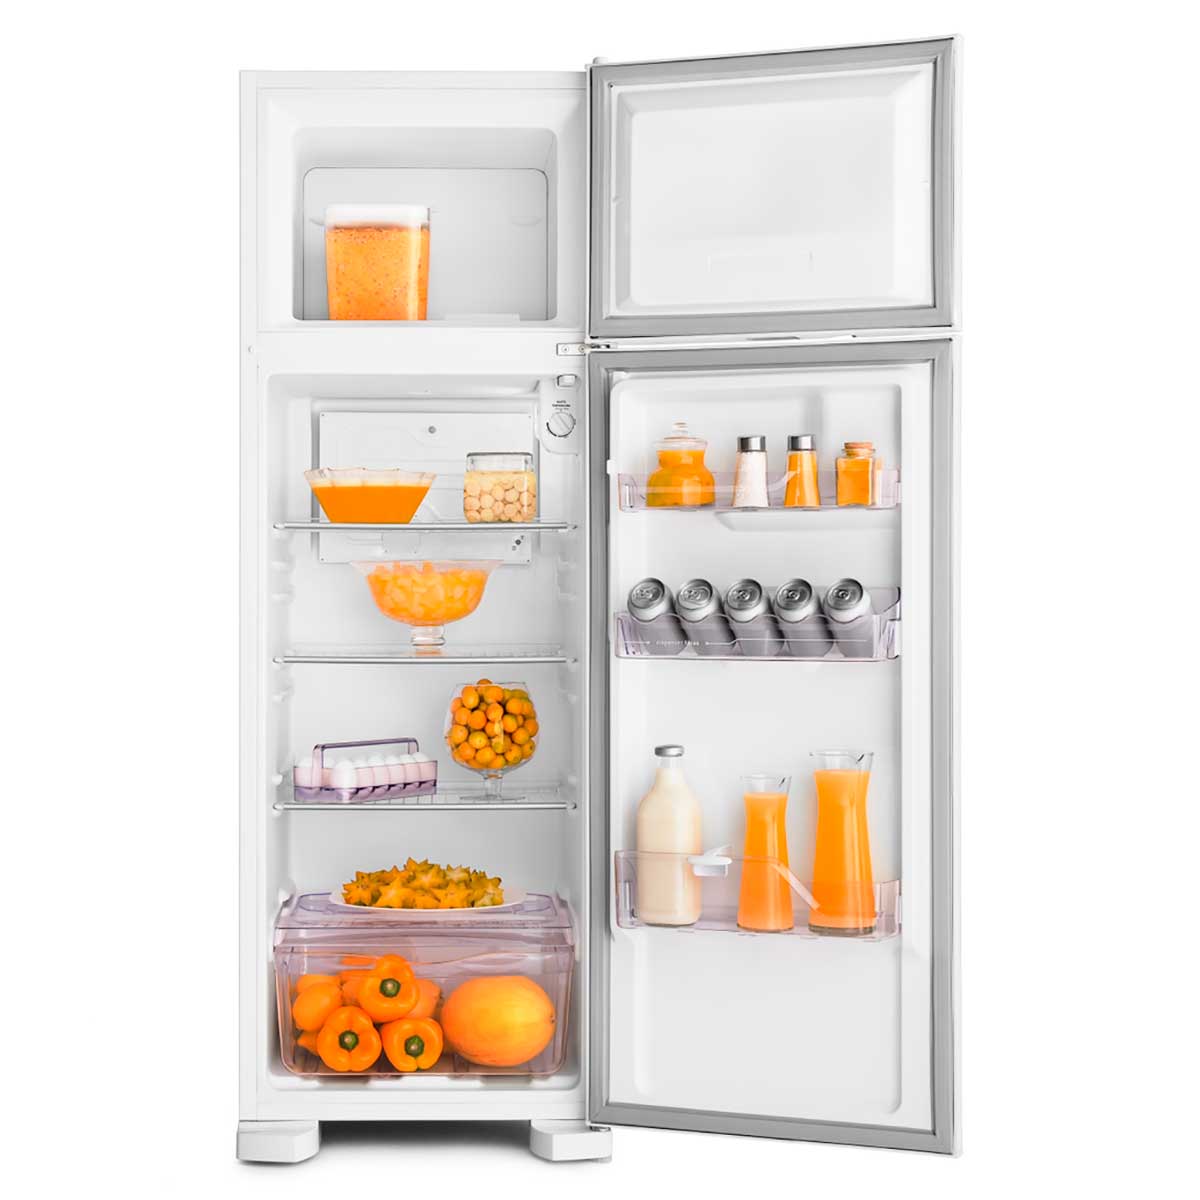 geladeira-electrolux-2-portas-dc35a-260-litros-branca-220v-3.jpg